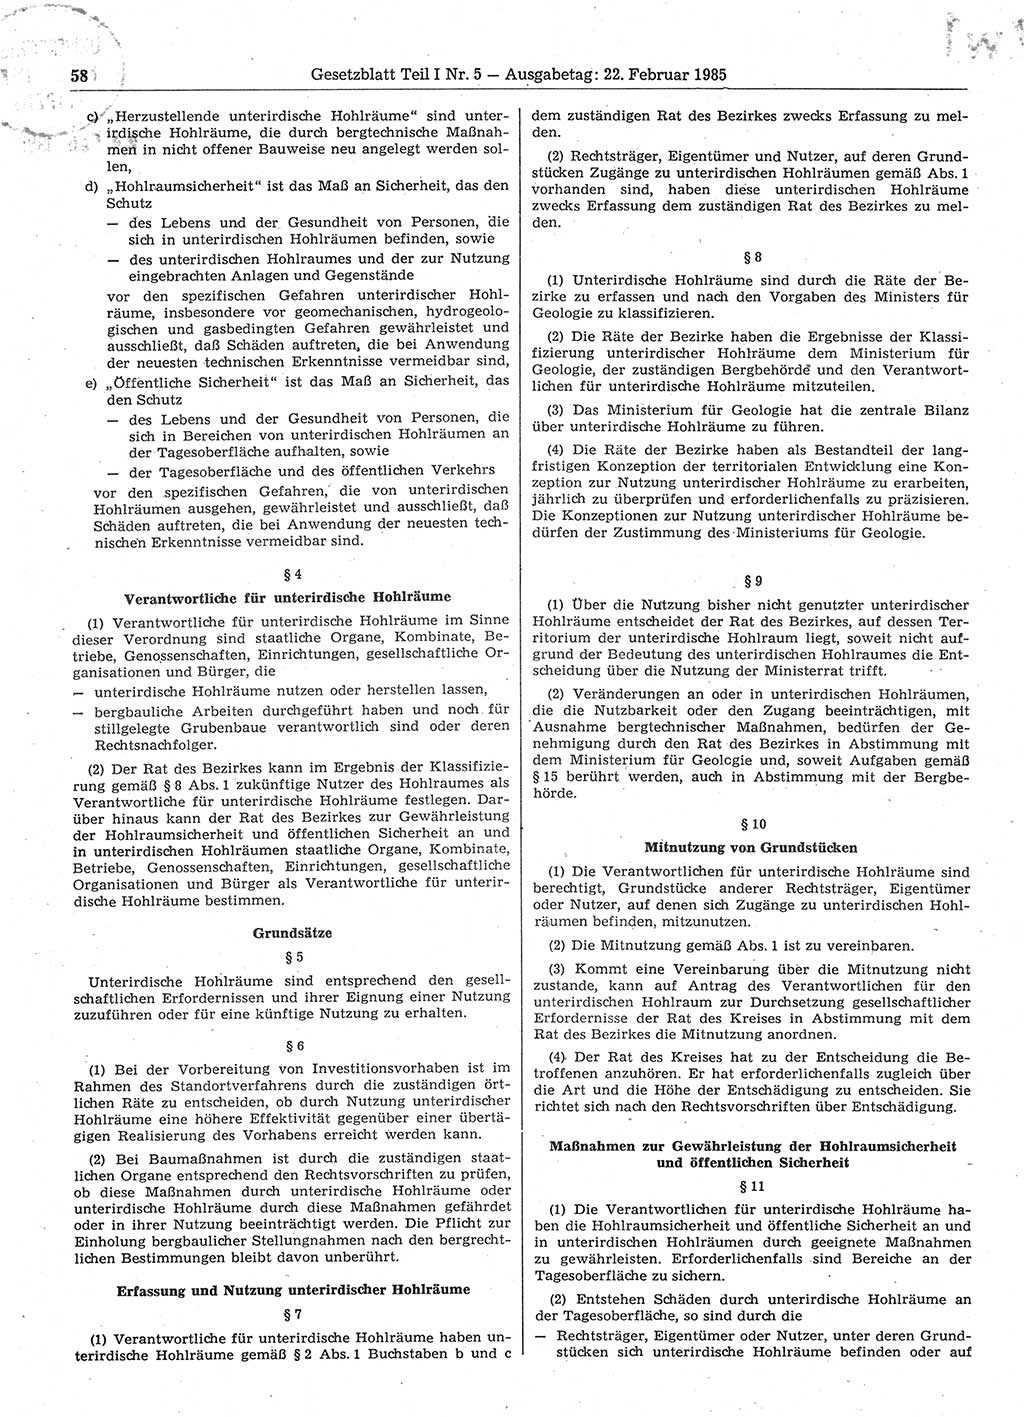 Gesetzblatt (GBl.) der Deutschen Demokratischen Republik (DDR) Teil Ⅰ 1985, Seite 58 (GBl. DDR Ⅰ 1985, S. 58)